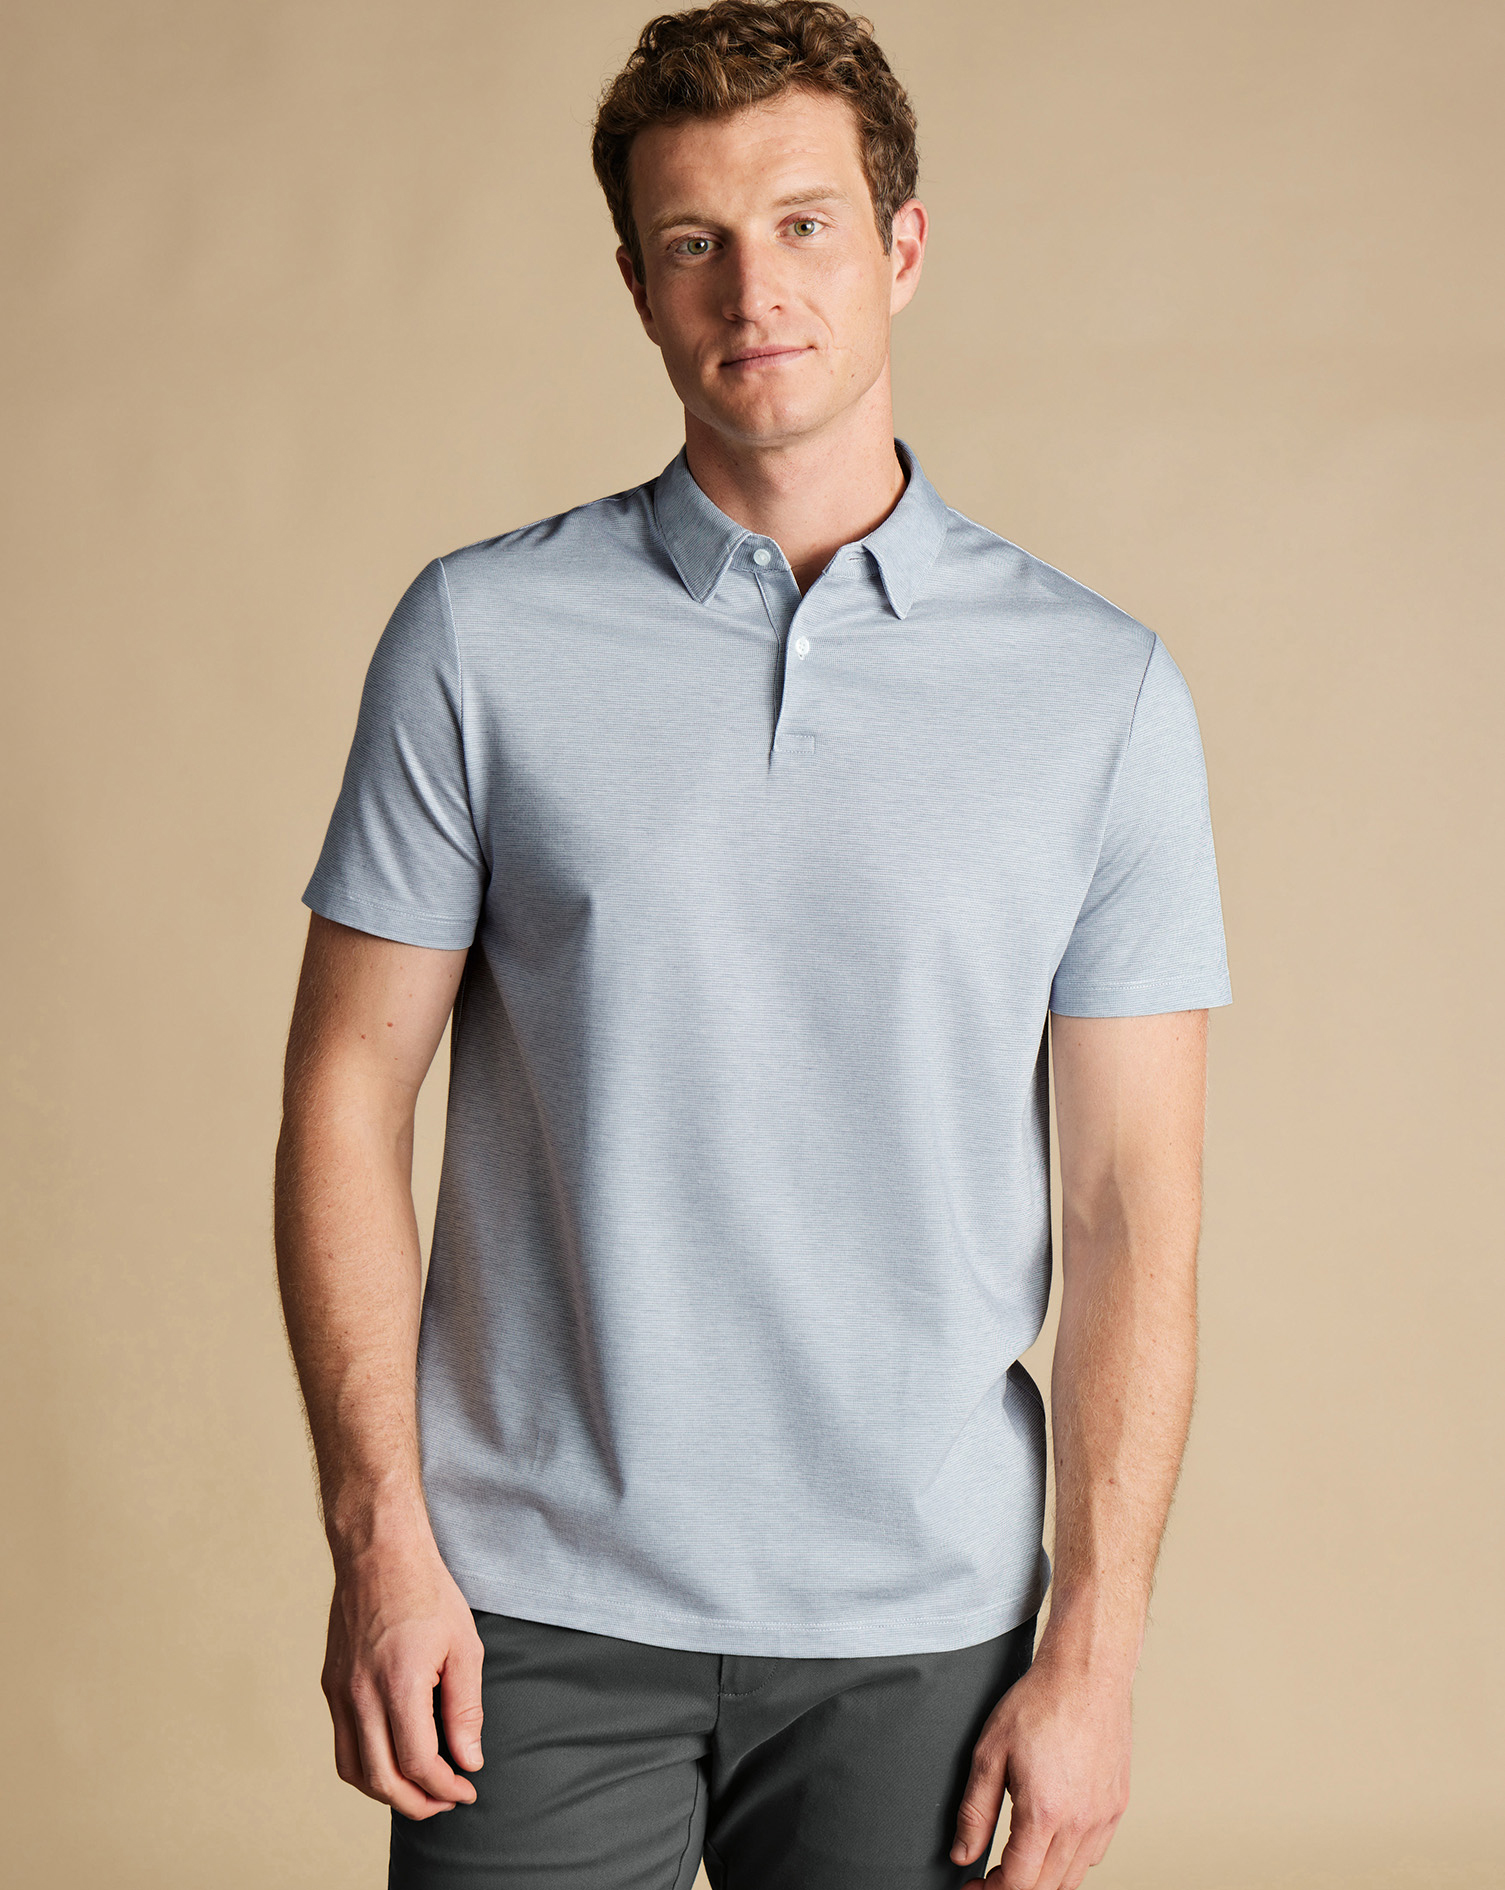 Men's Charles Tyrwhitt Cool Textured Polo Shirt - Light Blue Size XXXL Cotton
